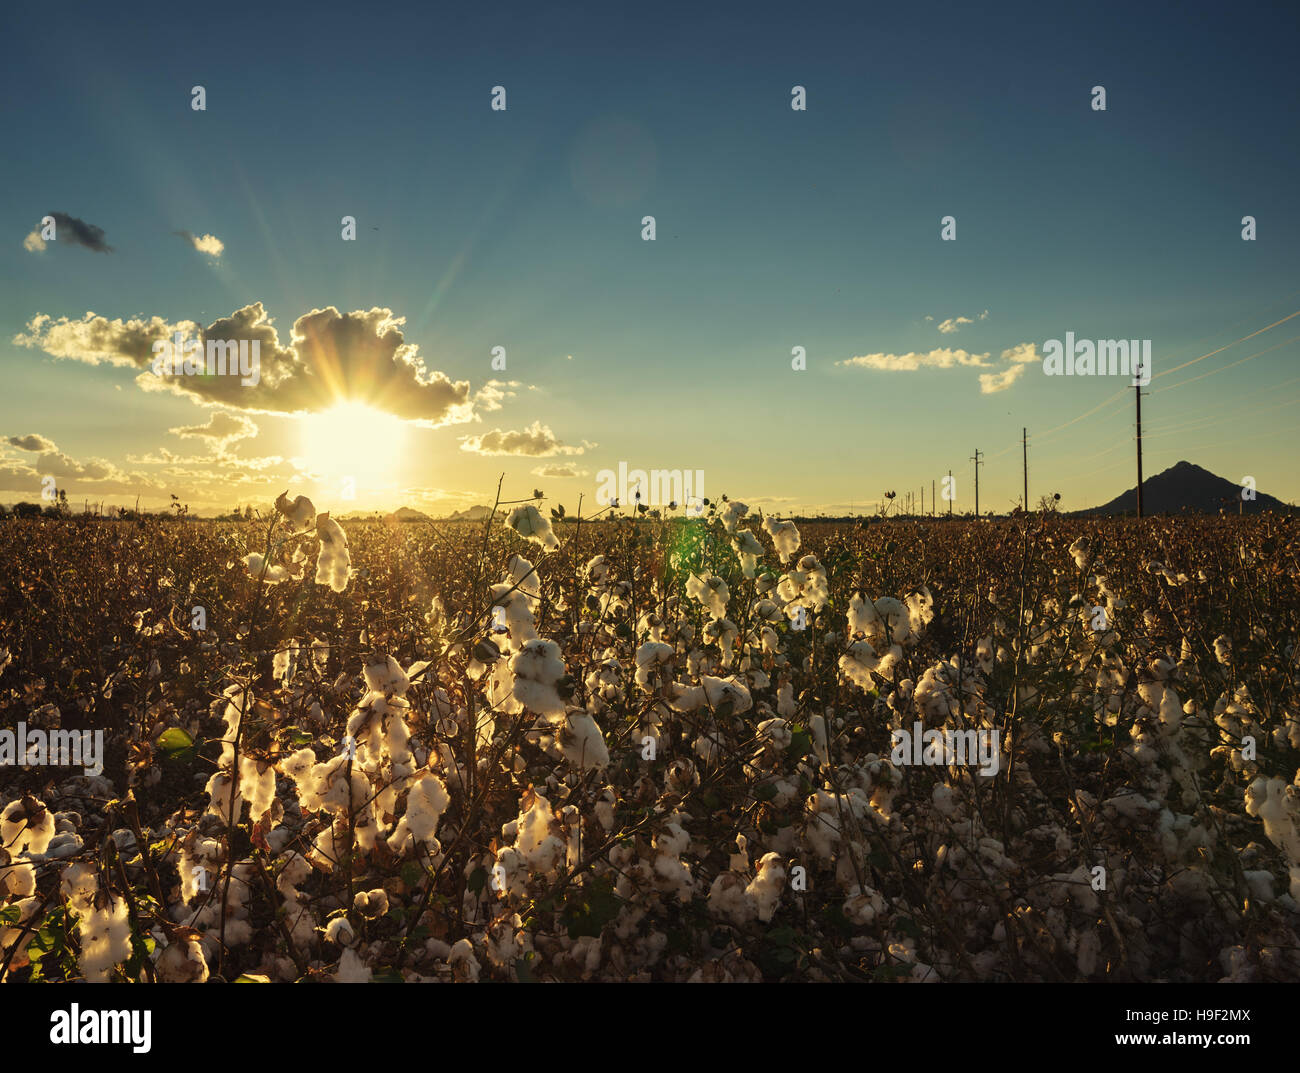 Wattebausch in voller Blüte bei Sonnenuntergang - Landwirtschaft Bauernhof Bild zuschneiden Stockfoto